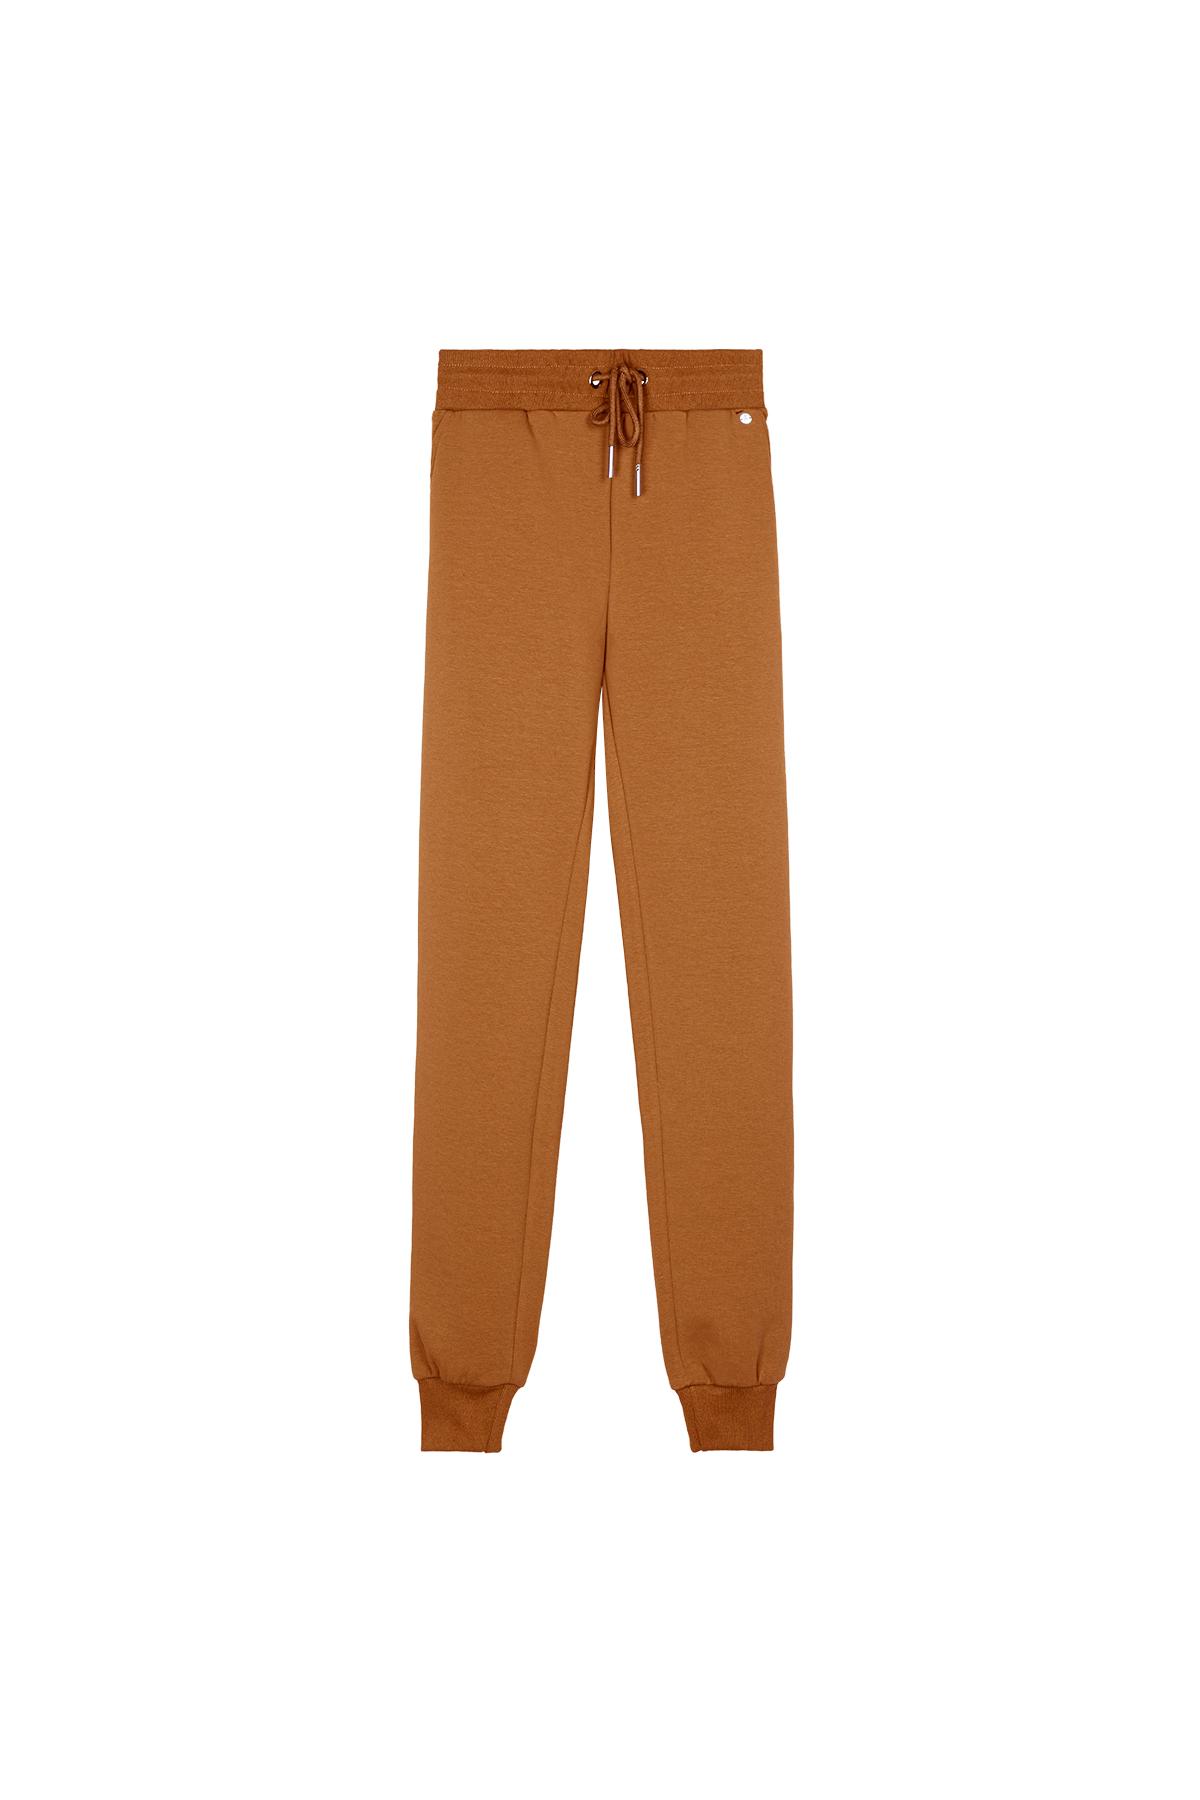 Pantalones cómodos estilo casual Naranja XL 